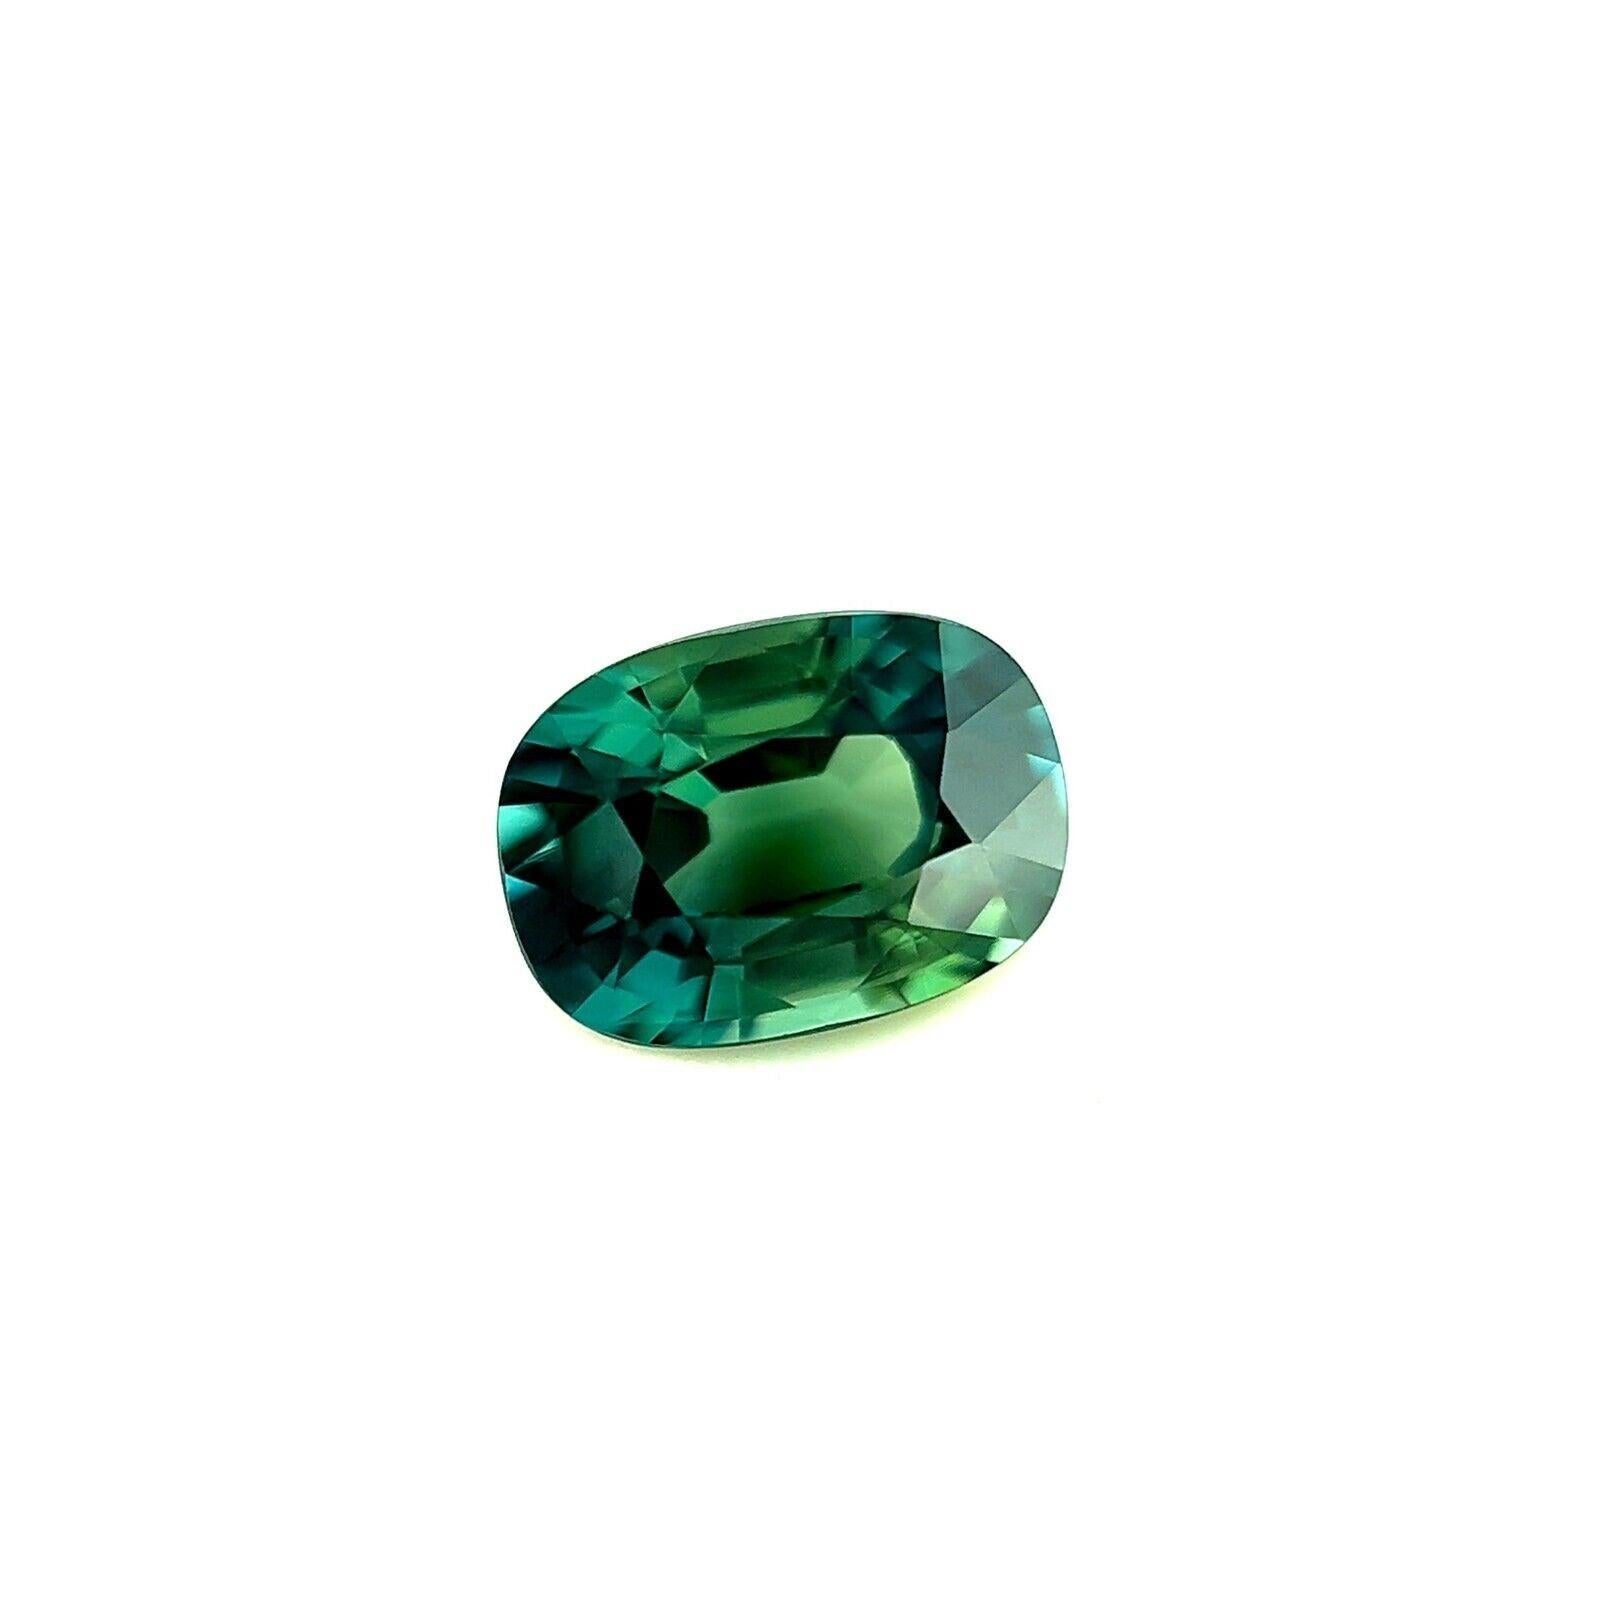 Natürlicher GRA-zertifizierter 1,20Kt Grüner Blauer Saphir Seltener Kissenschliff Edelstein IF

Natürlicher GRA-zertifizierter unbehandelter grüner blauer Saphir Lose Edelstein.
1,20 Karat Saphir mit einer schönen tief grünlich-blauen